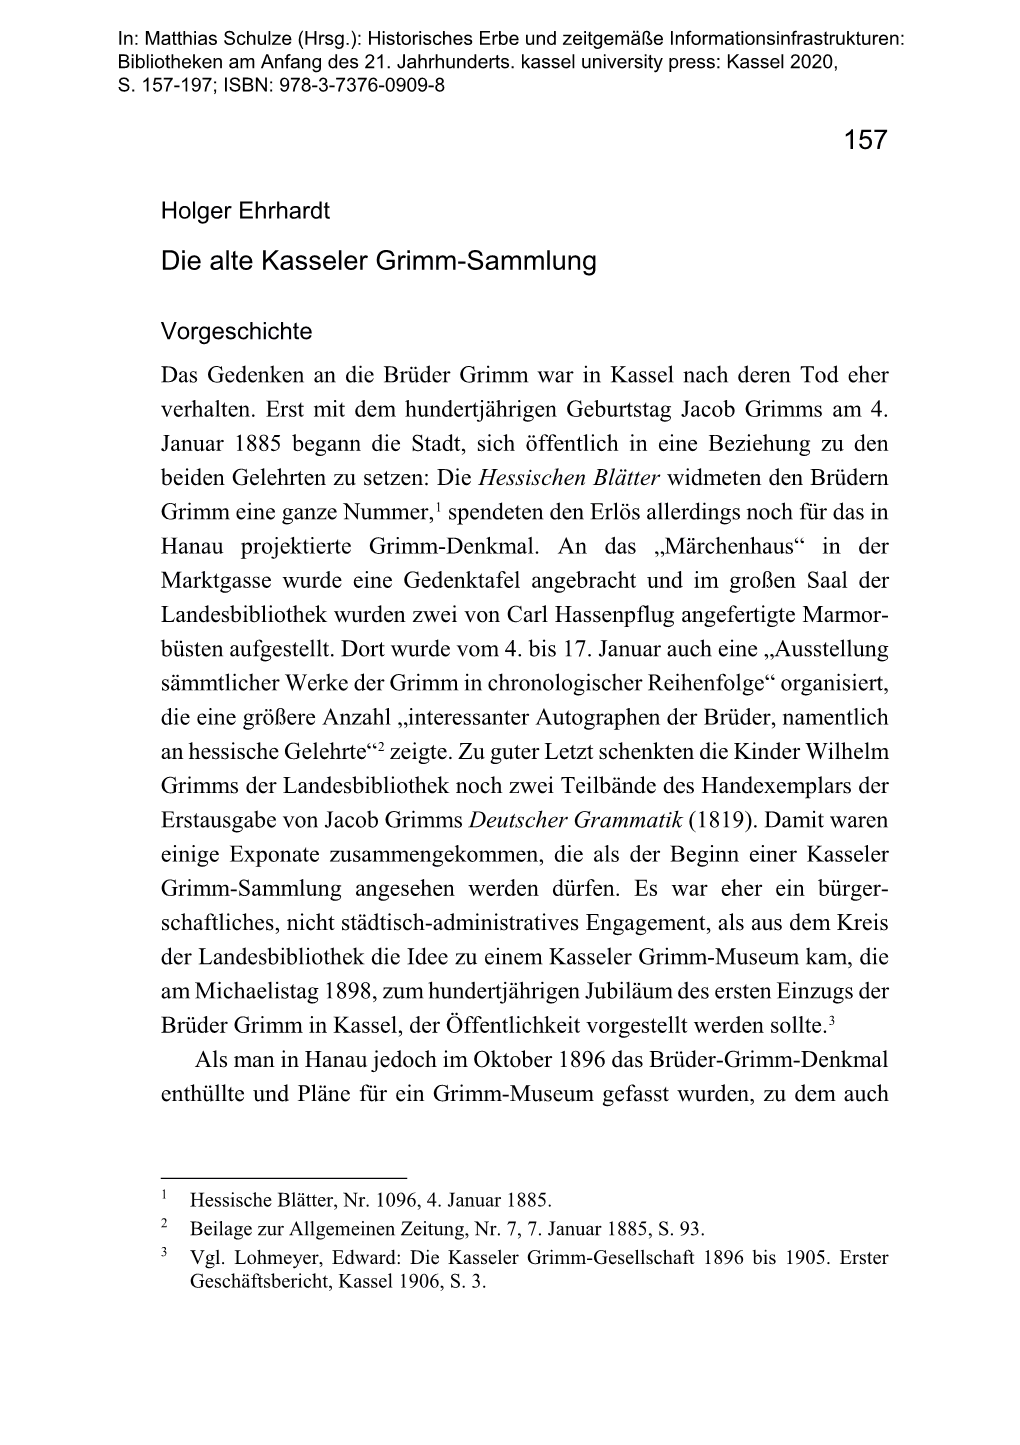 Ehrhardt Grimm-Sammlung.Pdf (604.4Kb)